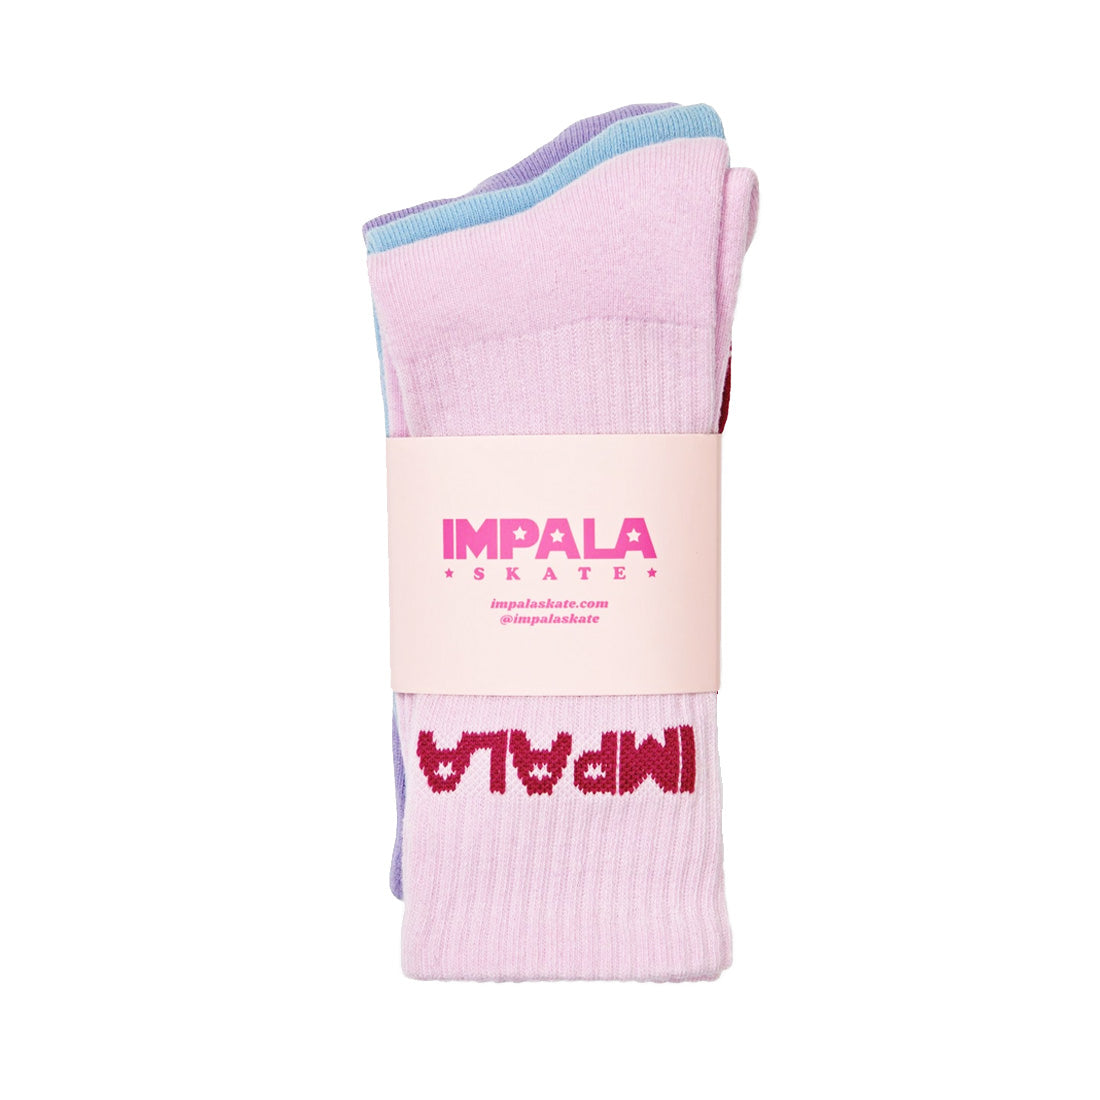 Impala Skate Crew Socks 3pk - Pastel Apparel Socks